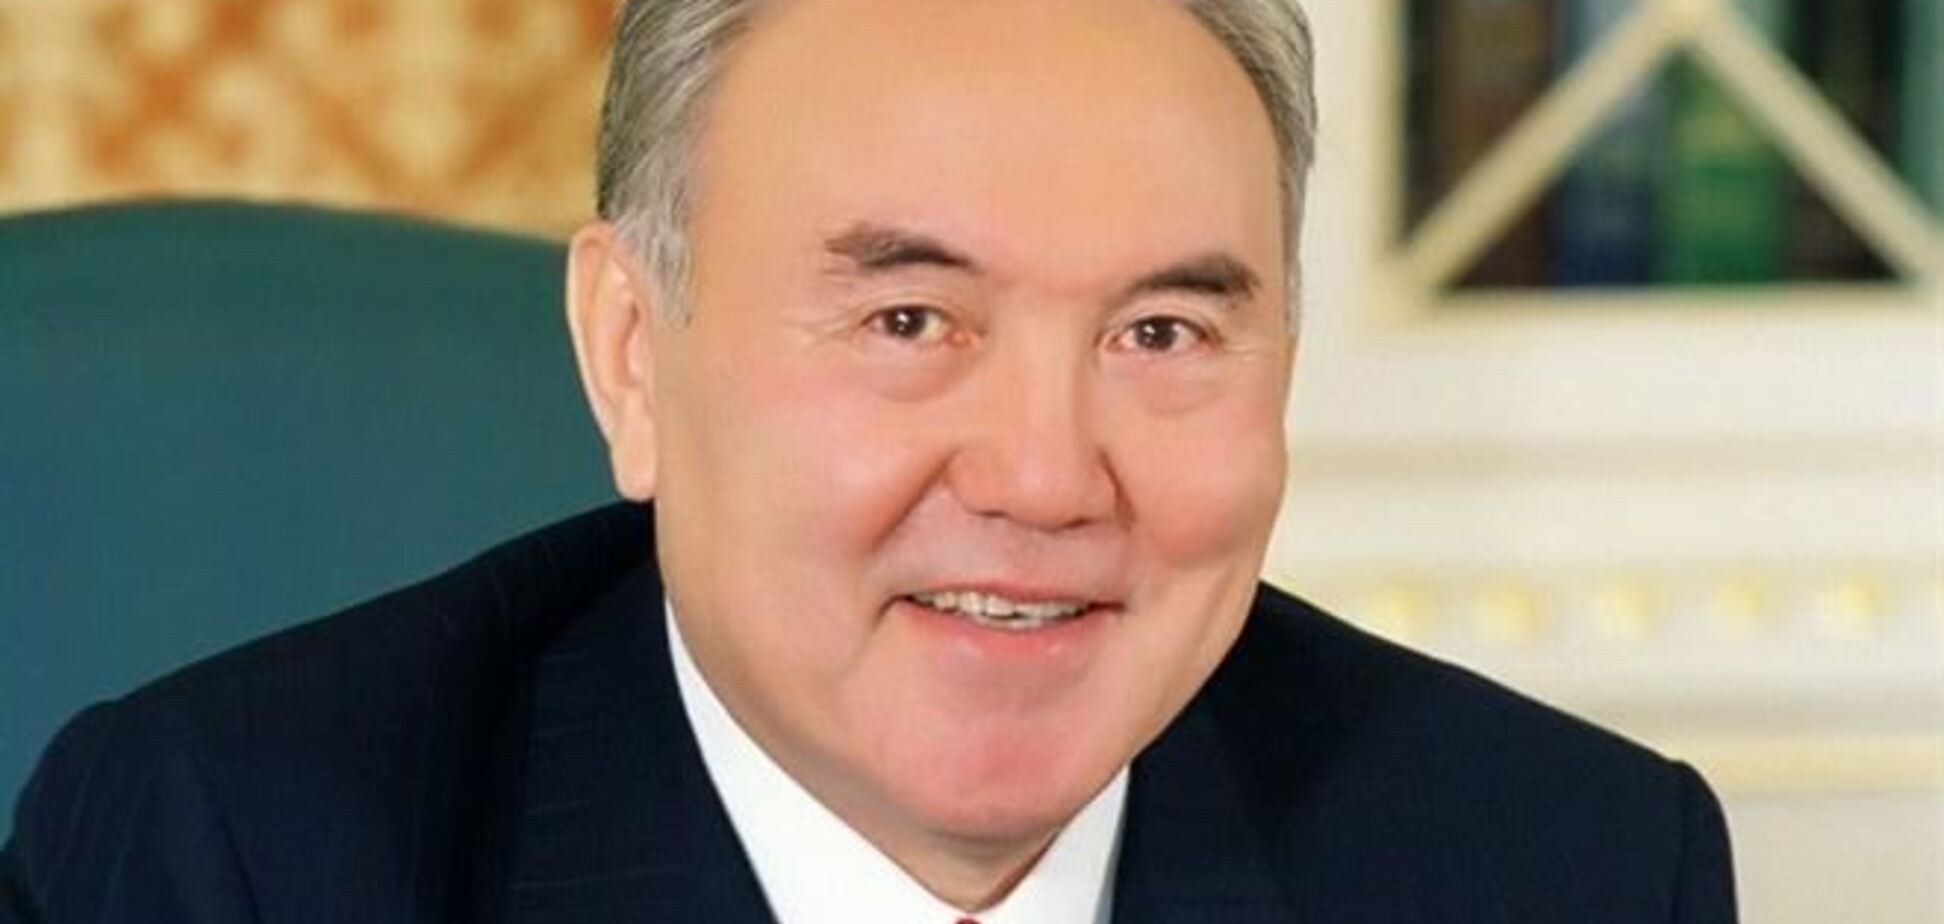 Договір про створення Євразійського союзу буде підписаний в 2014 році - Назарбаєв 